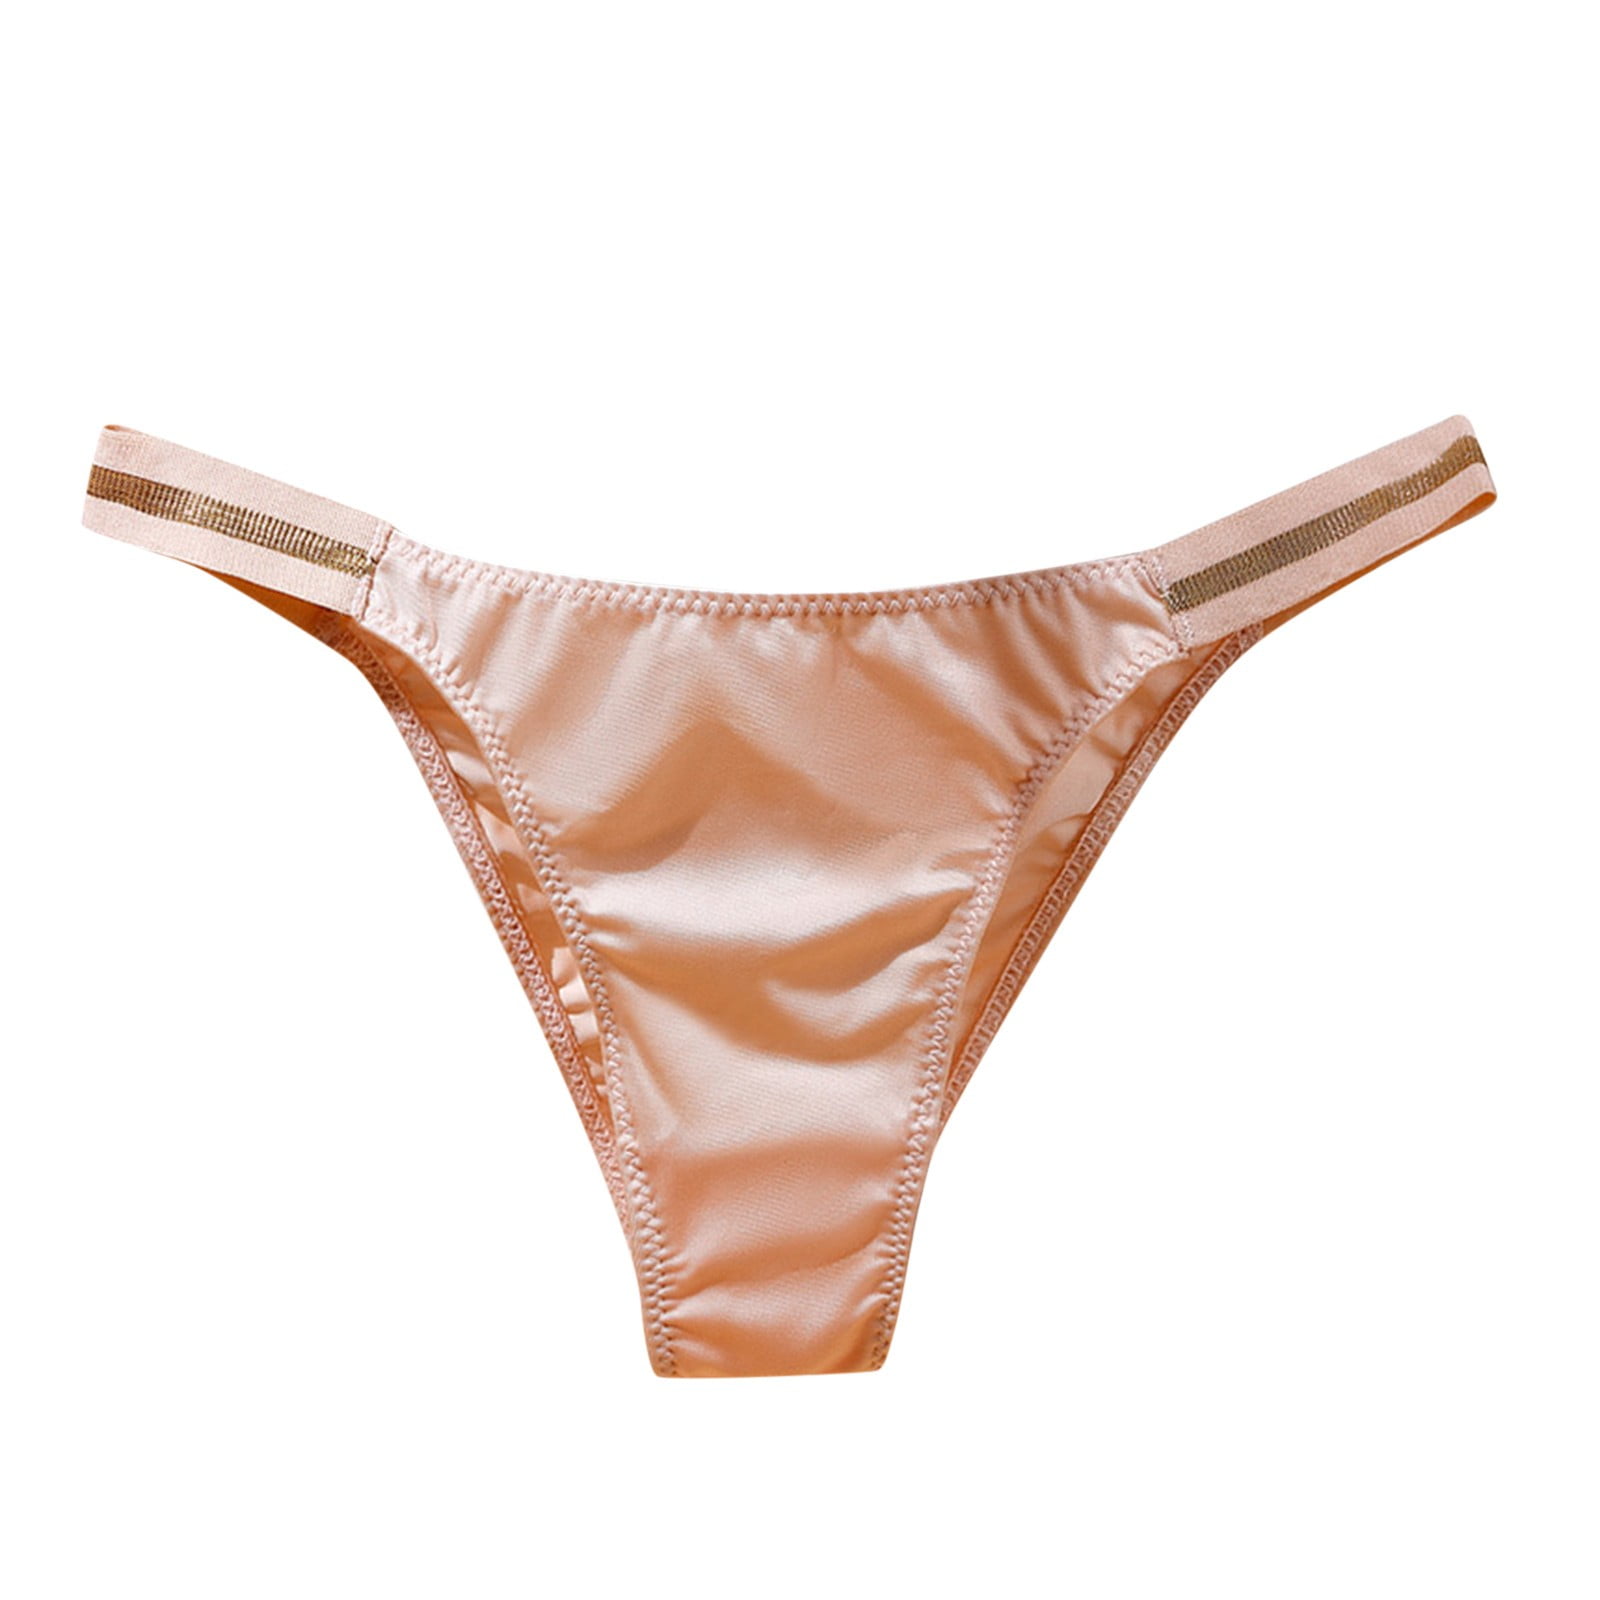 Pedort Sport Bras for Women Underwear Women Sports Bras - Padded